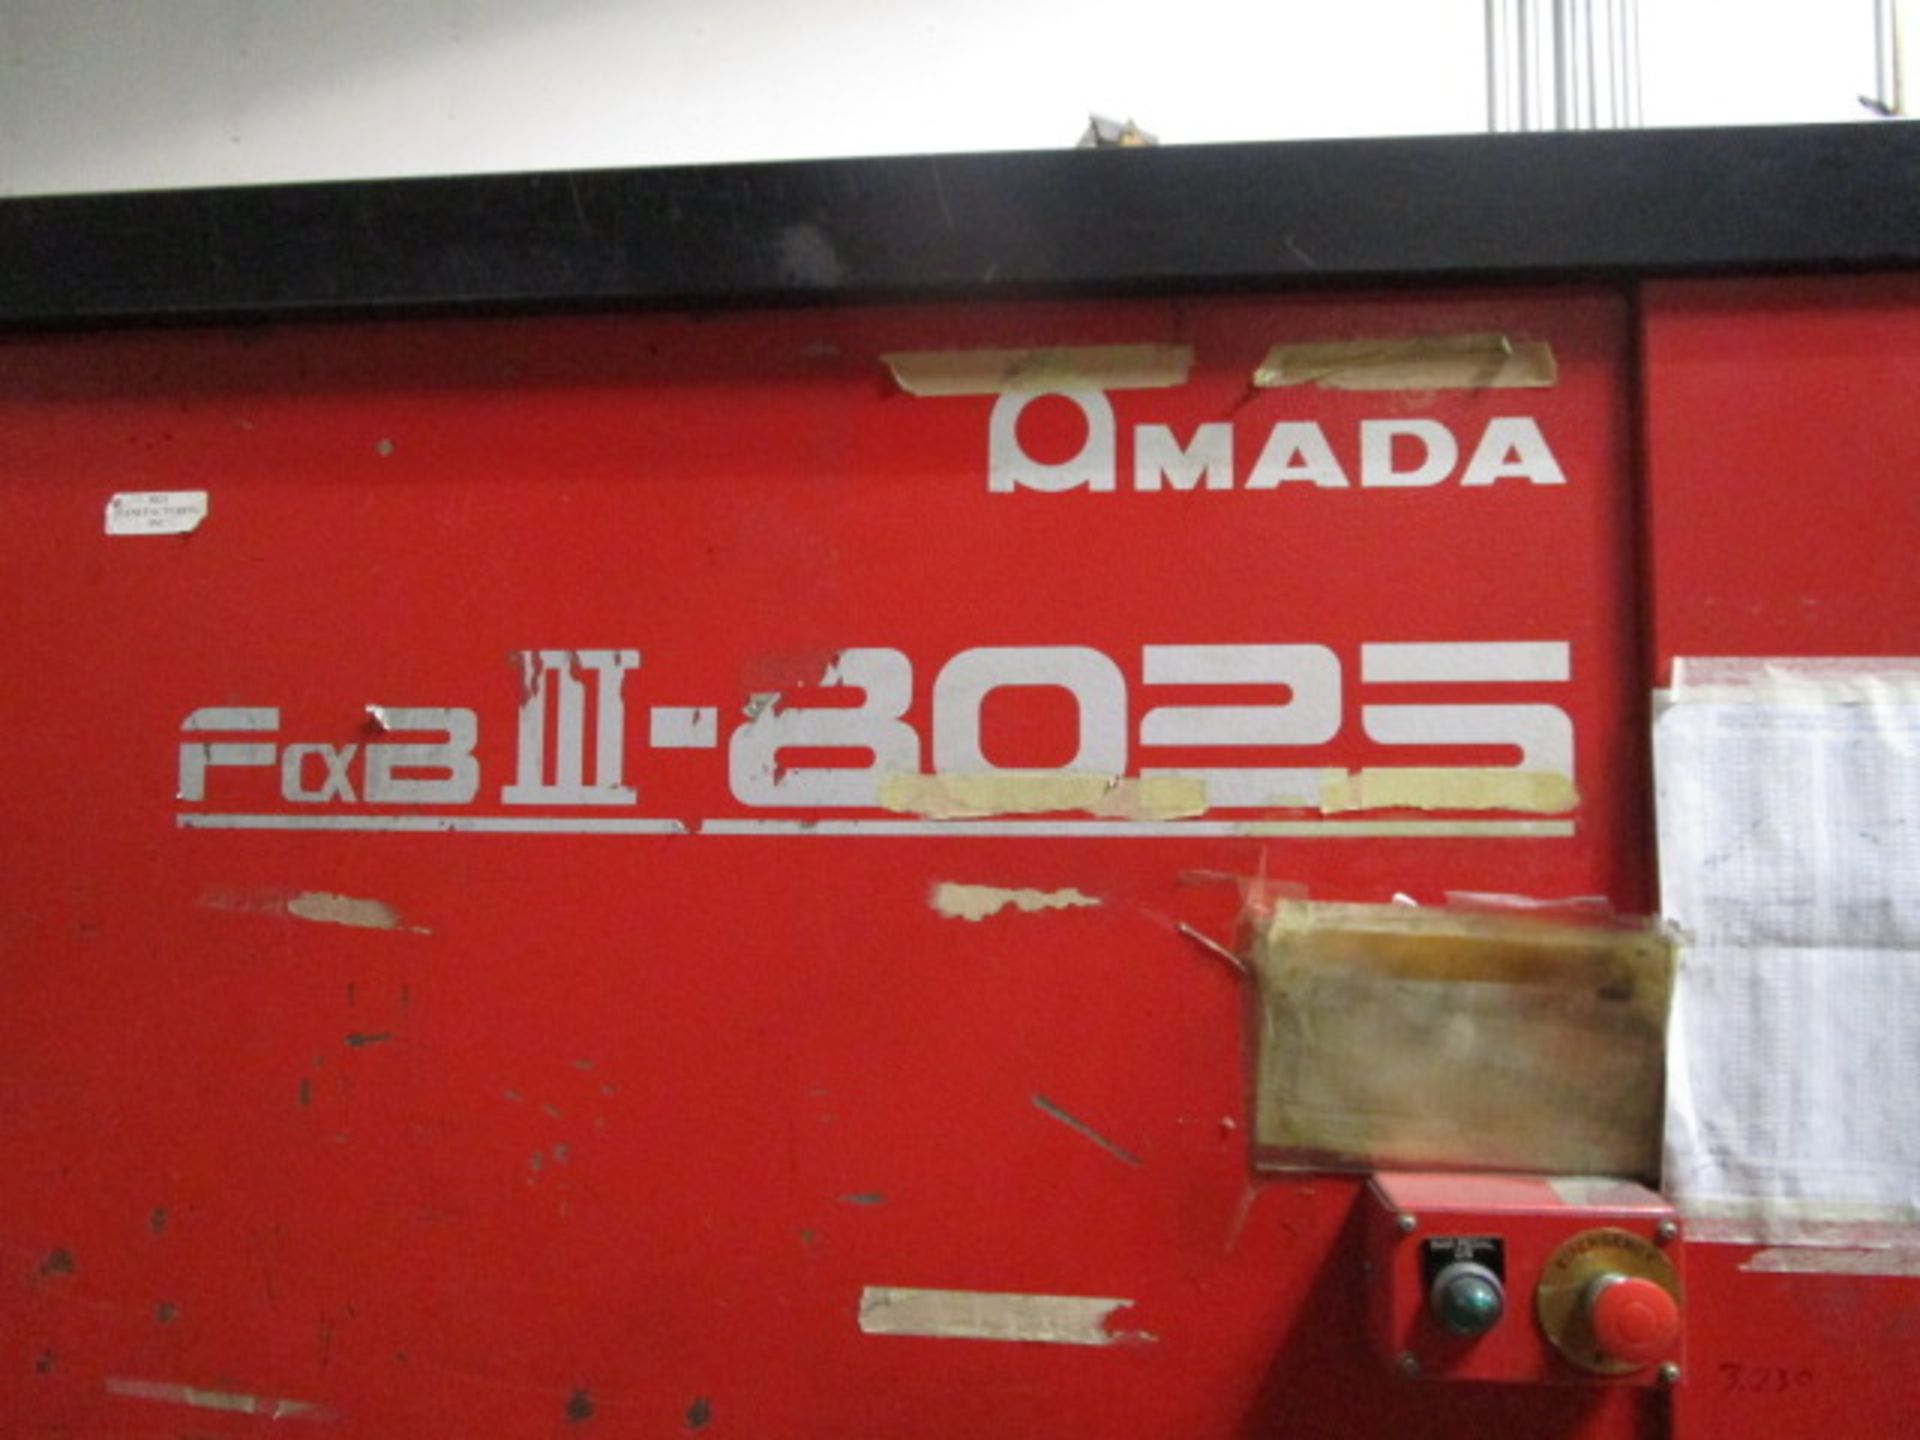 Amada FBD-8025NT Press Brake Machine, Model FBD-8025NT, Serial Number 80250388 - Image 13 of 22